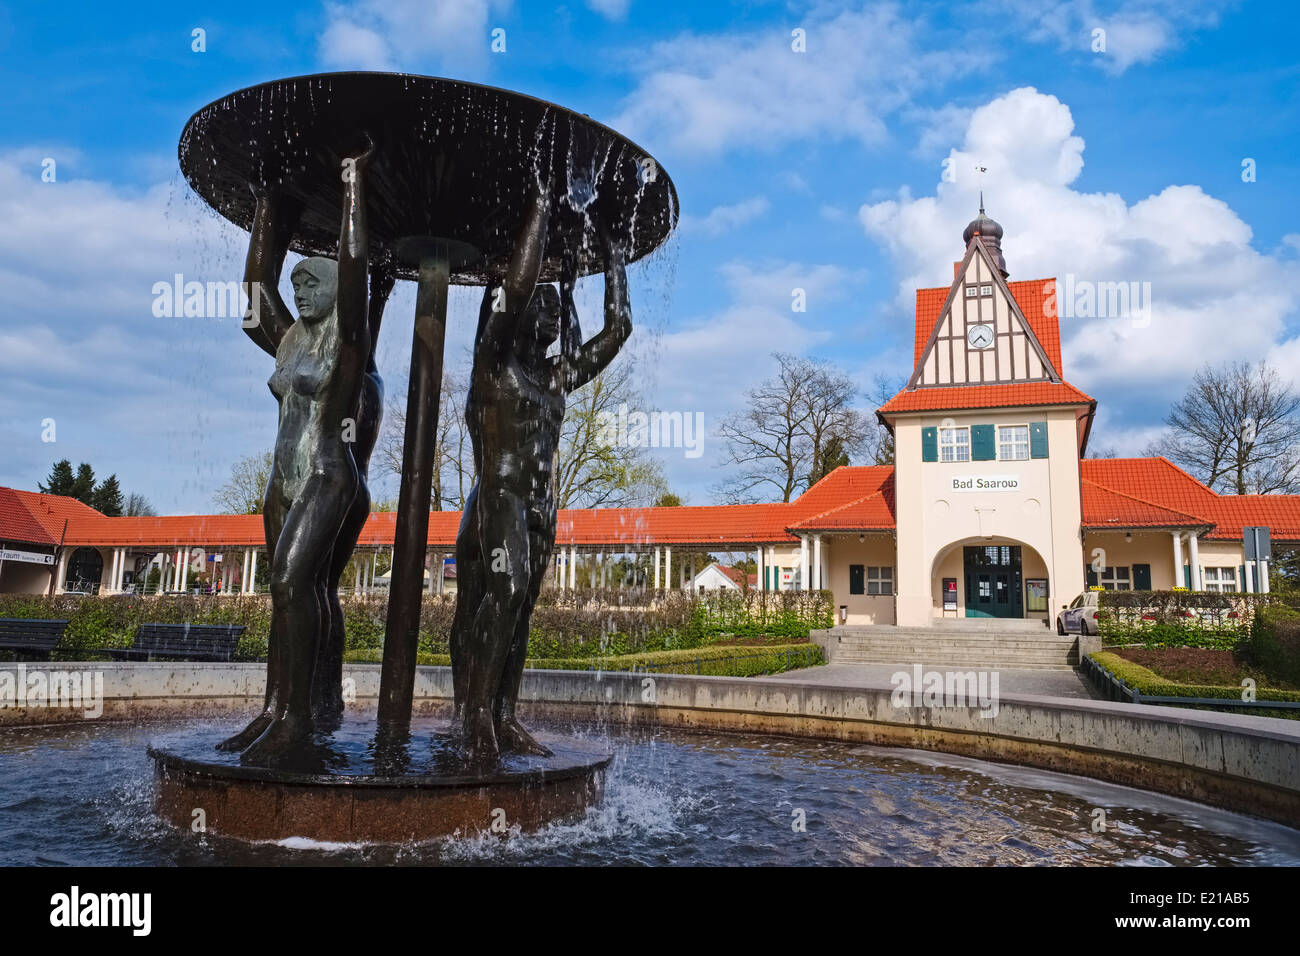 Fontaine en face de la gare de Bad Saarow, Brandenburg, Allemagne Banque D'Images